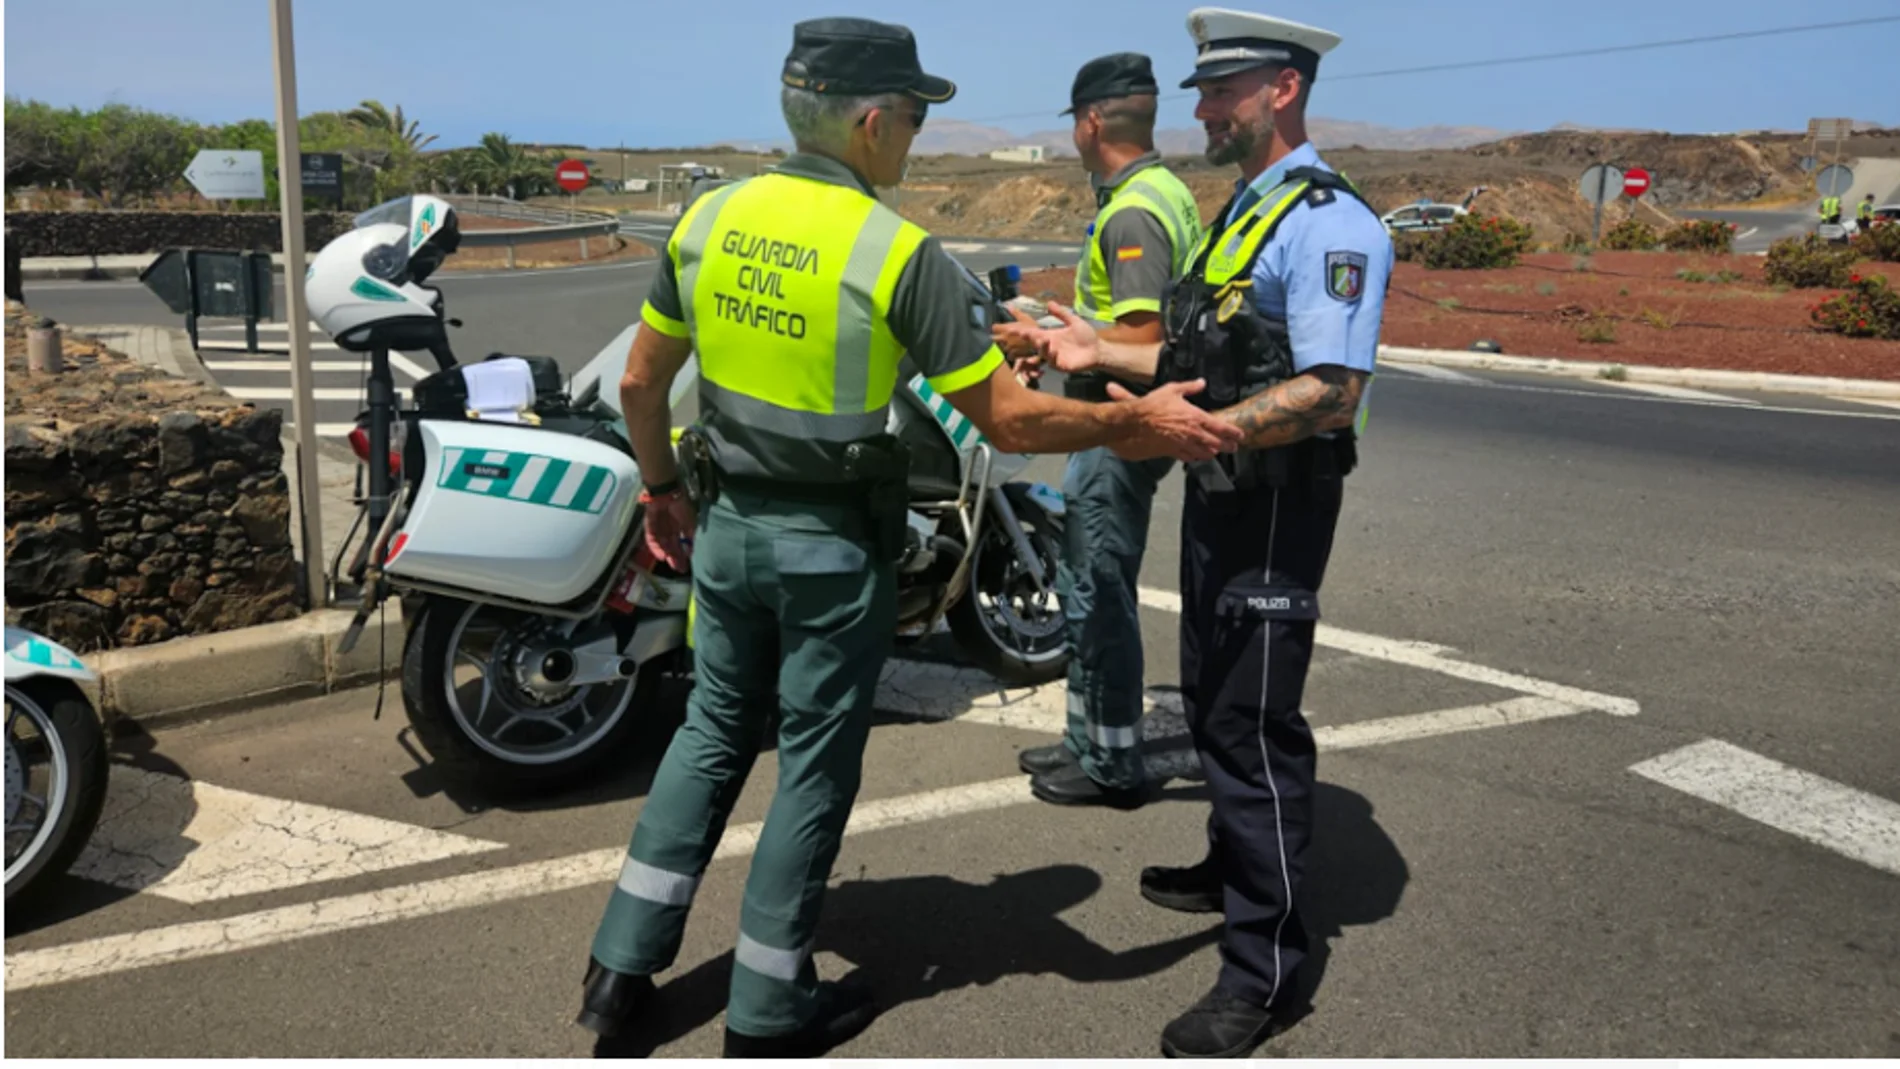 La Guardia Civil patrulla con agentes de otros países para proteger a los turistas en Canarias